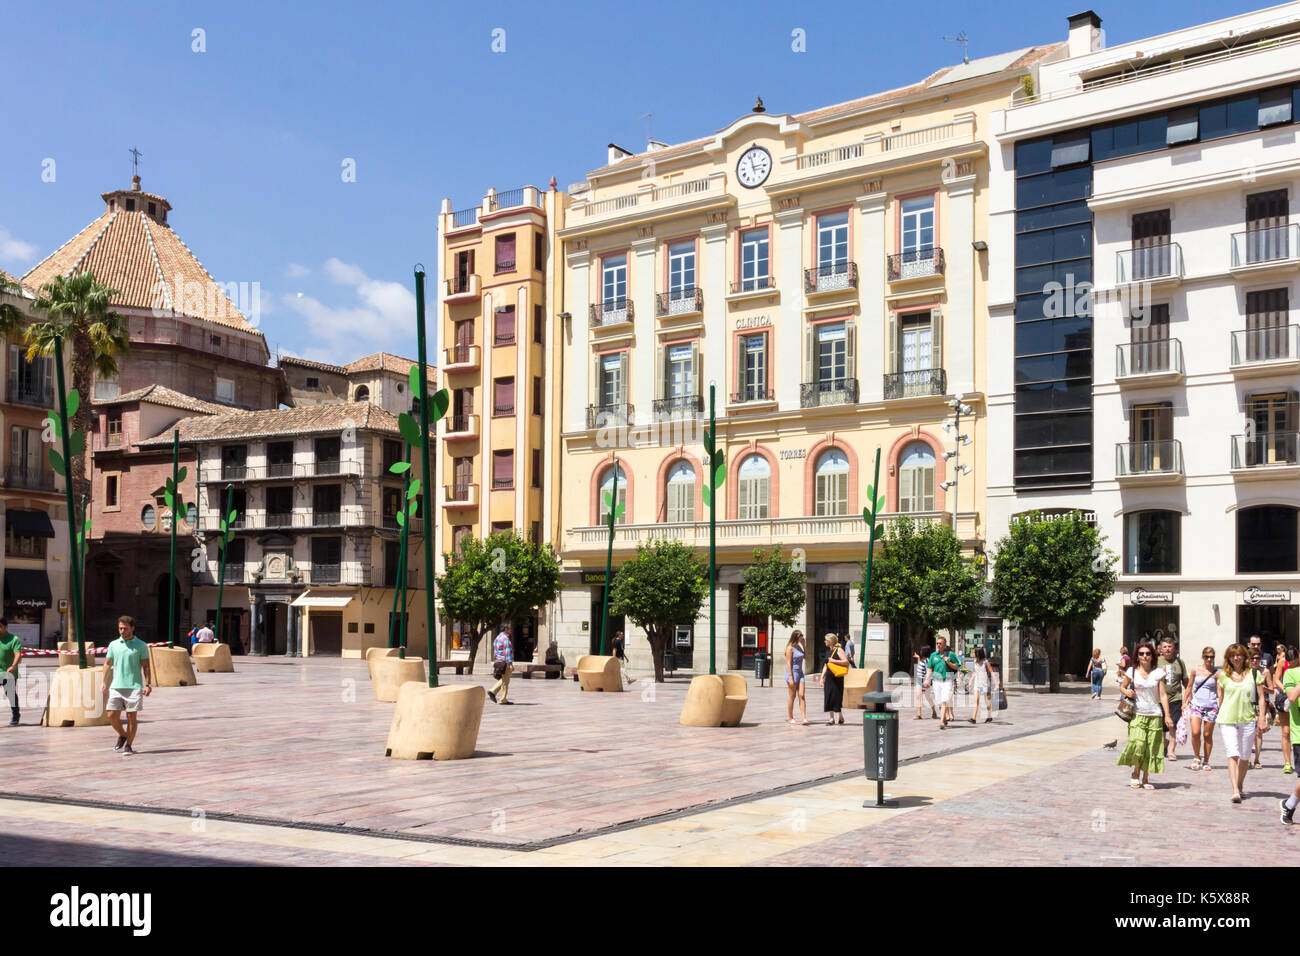 People crossing the Plaza de la Constitucion, Malaga, Spain Stock Photo